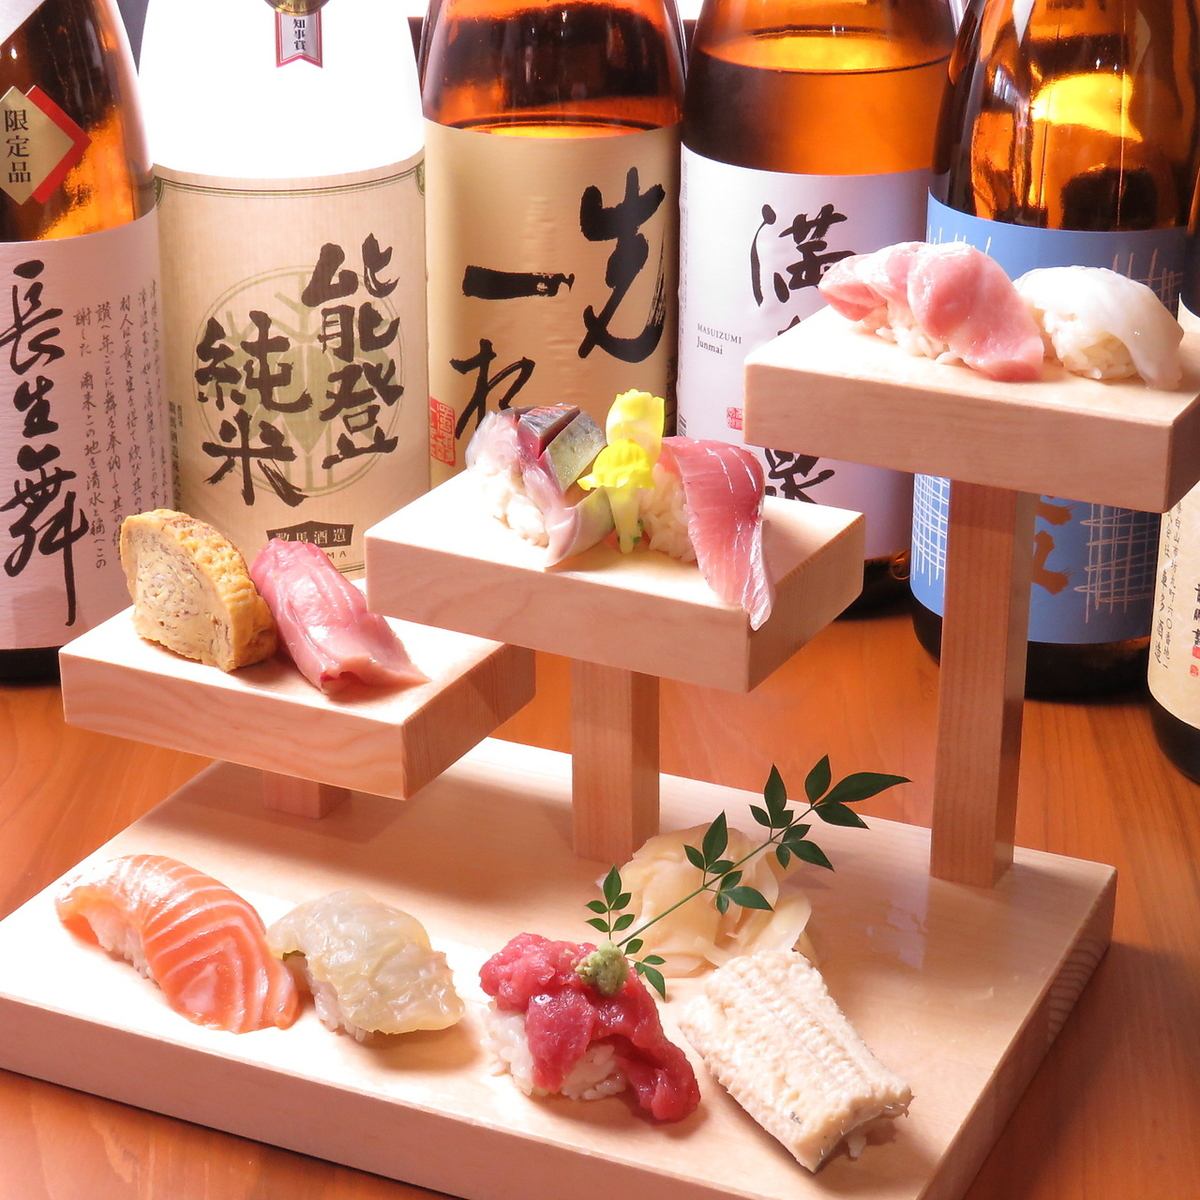 著名的“楼梯寿司”。颜色鲜艳！注意鱼的新鲜度和口感的扎实！